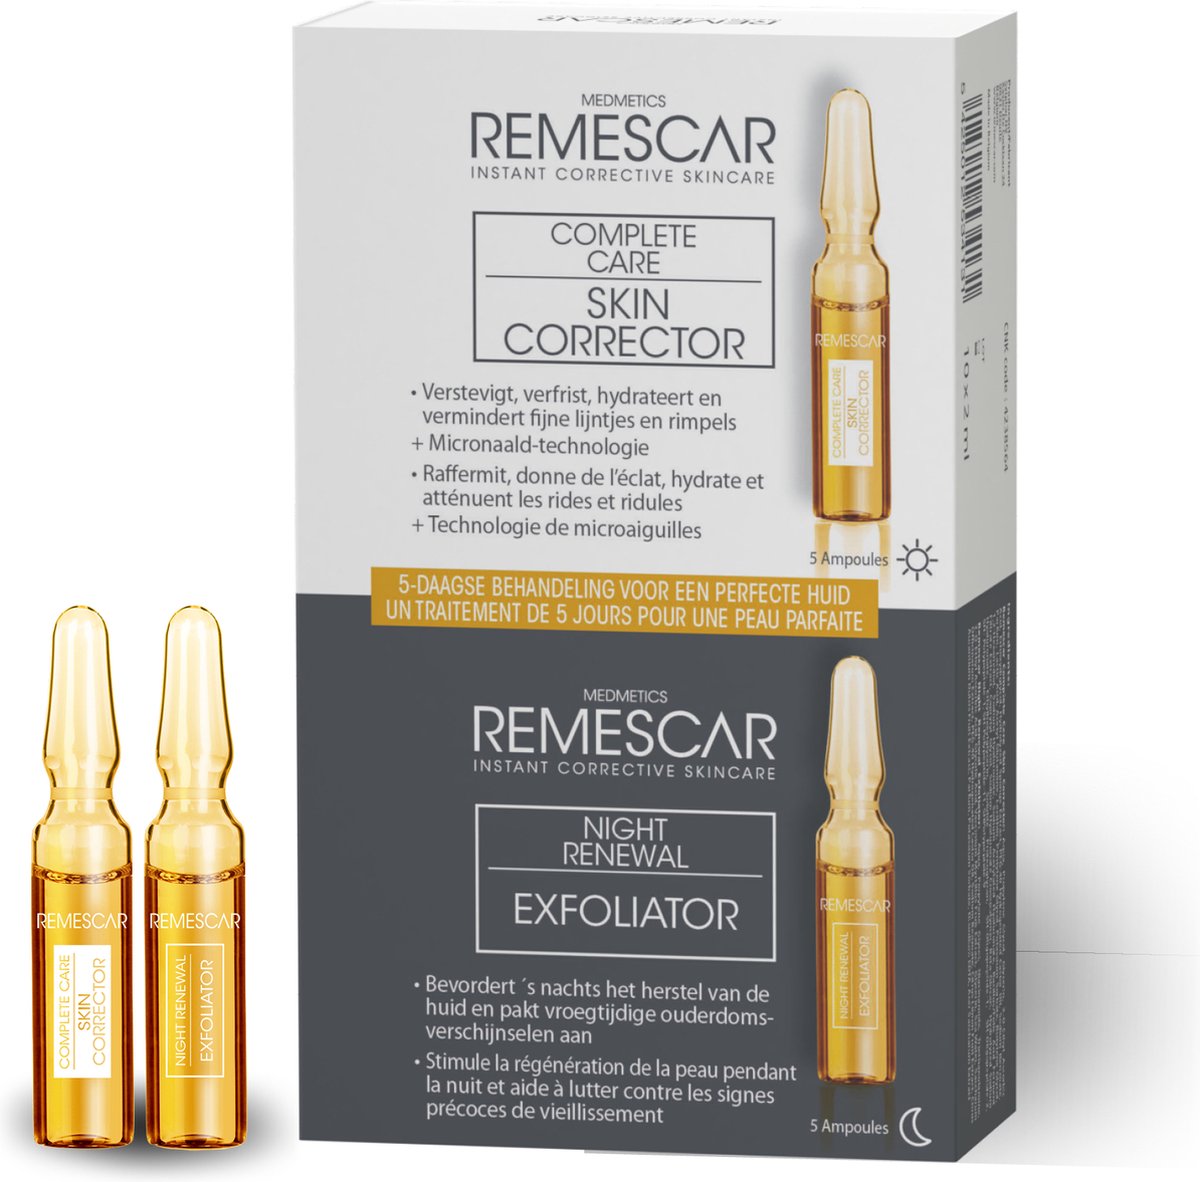 Remescar Complete Care Perfect Skin 5 Day Behandeling - 5 Hydraterende Verhelderende Dag Ampullen en 5 Exfoliërende Nachtampullen - Microneedling Technologie - Bestrijd fijne lijntjes en vroege tekenen van veroudering